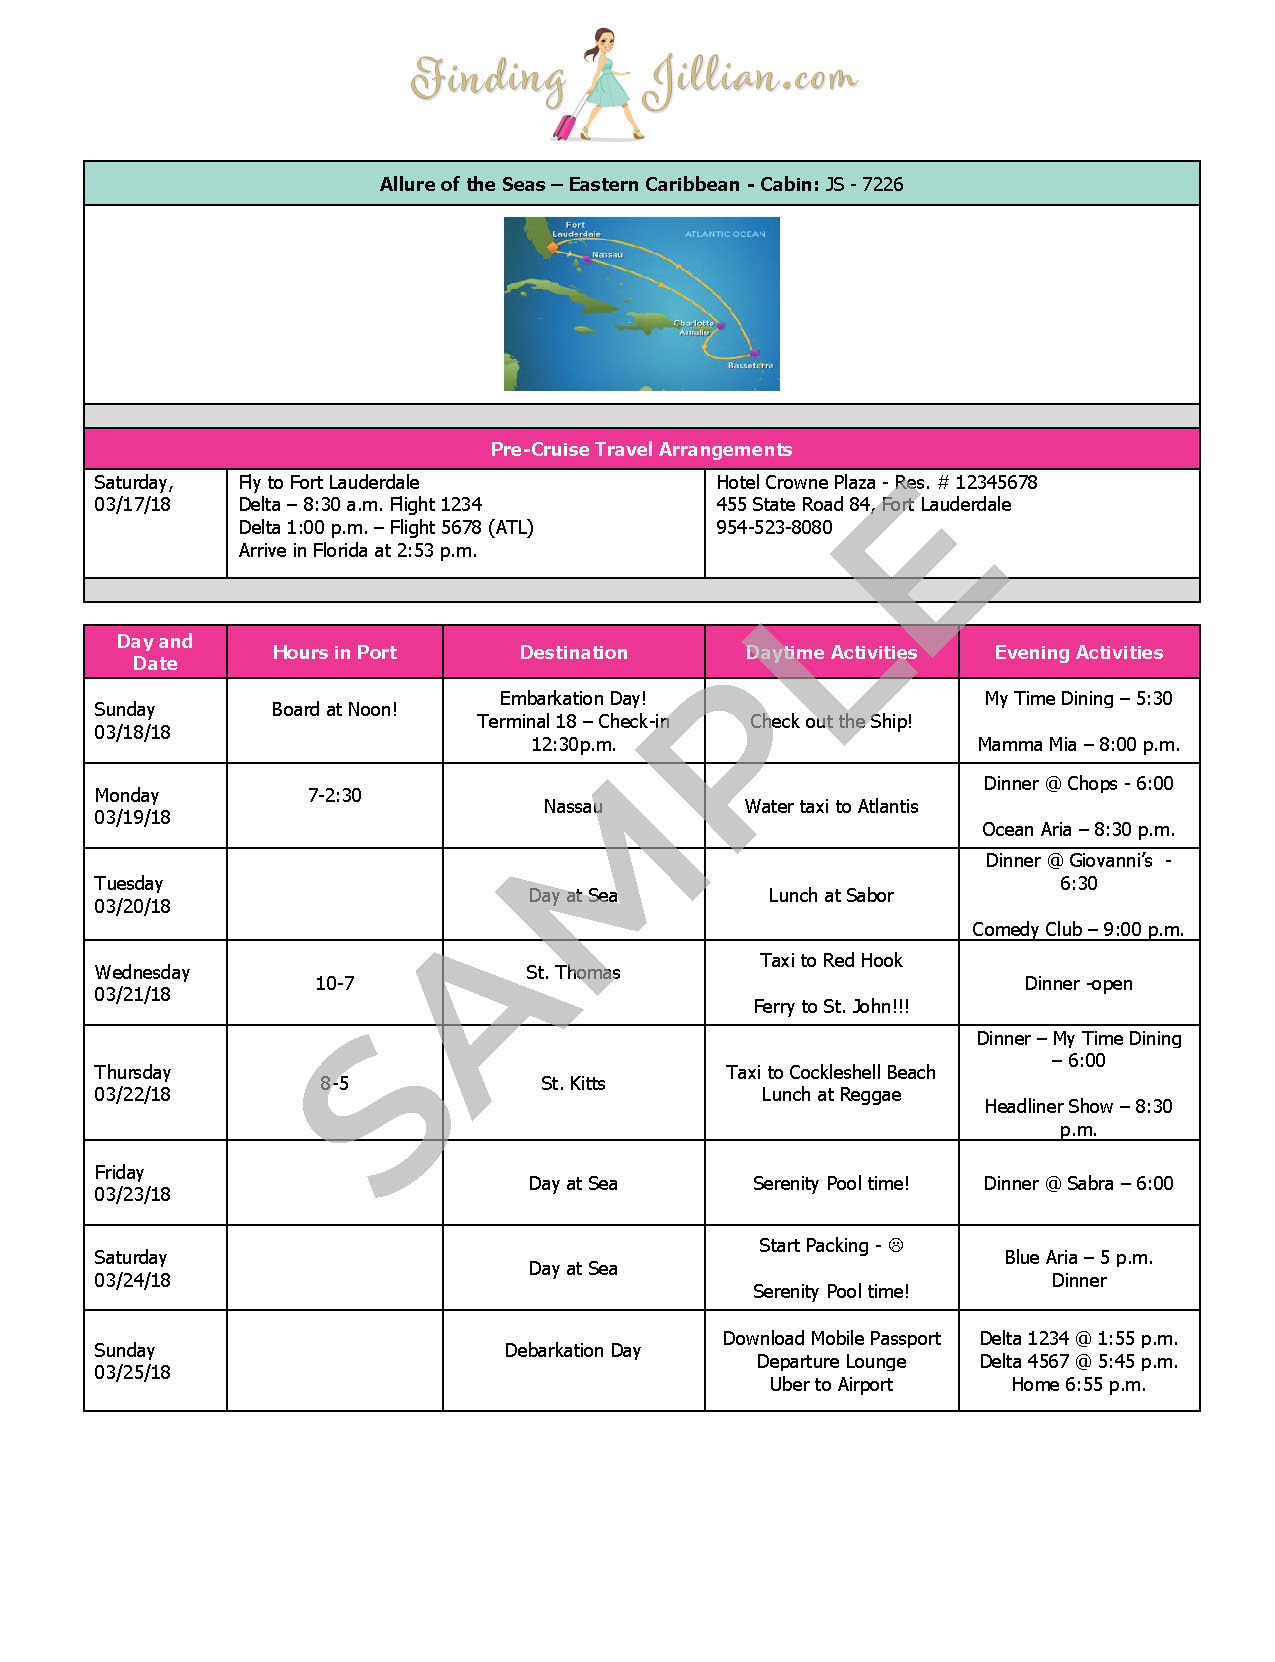 royal caribbean cruise daily itinerary